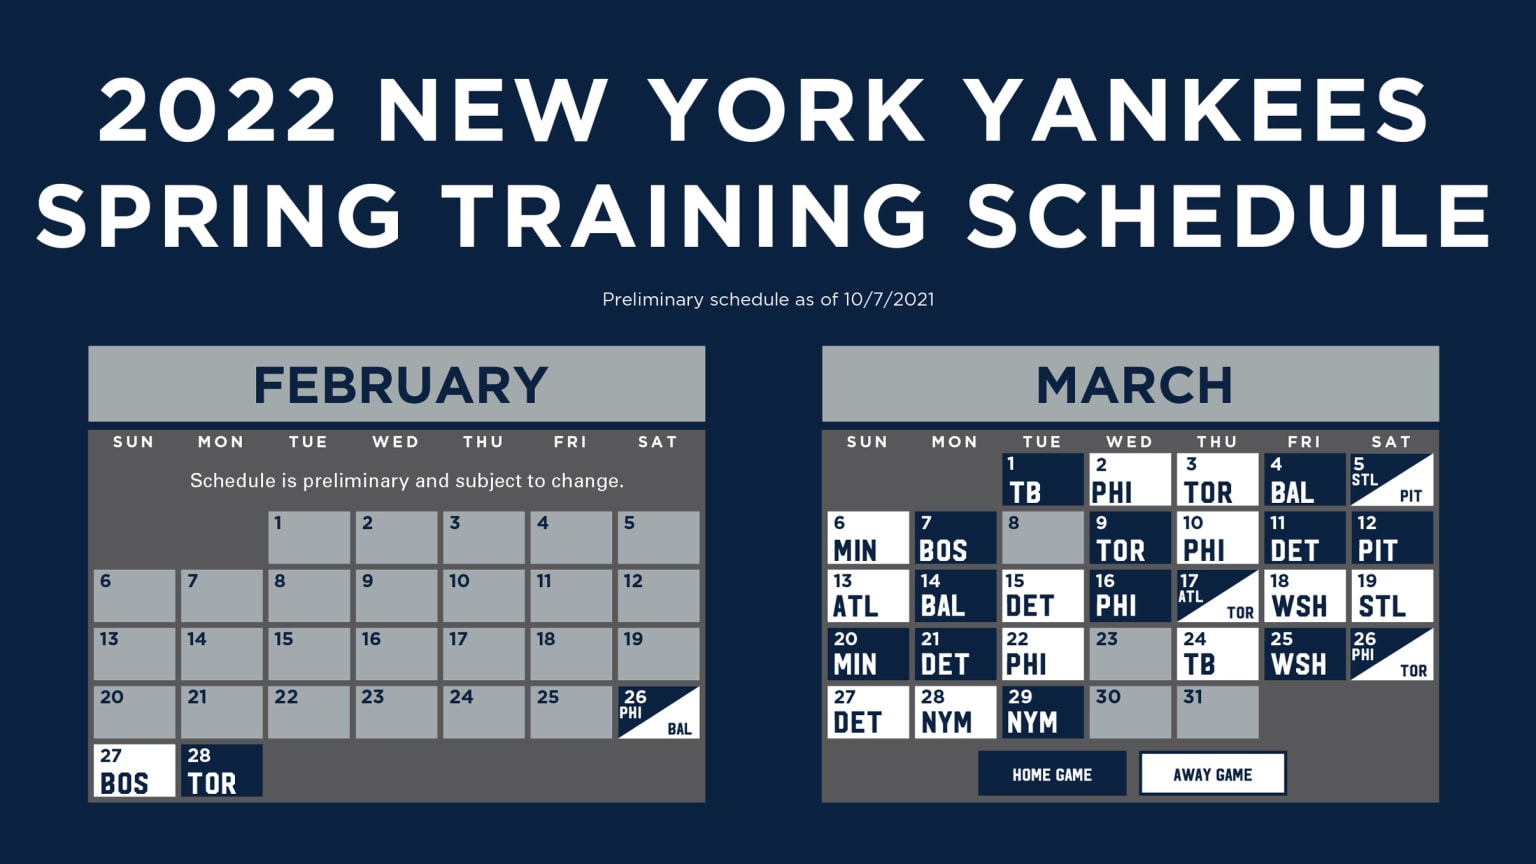 Mlb Regular Season Schedule 2022 Yankees Printable Schedule | New York Yankees